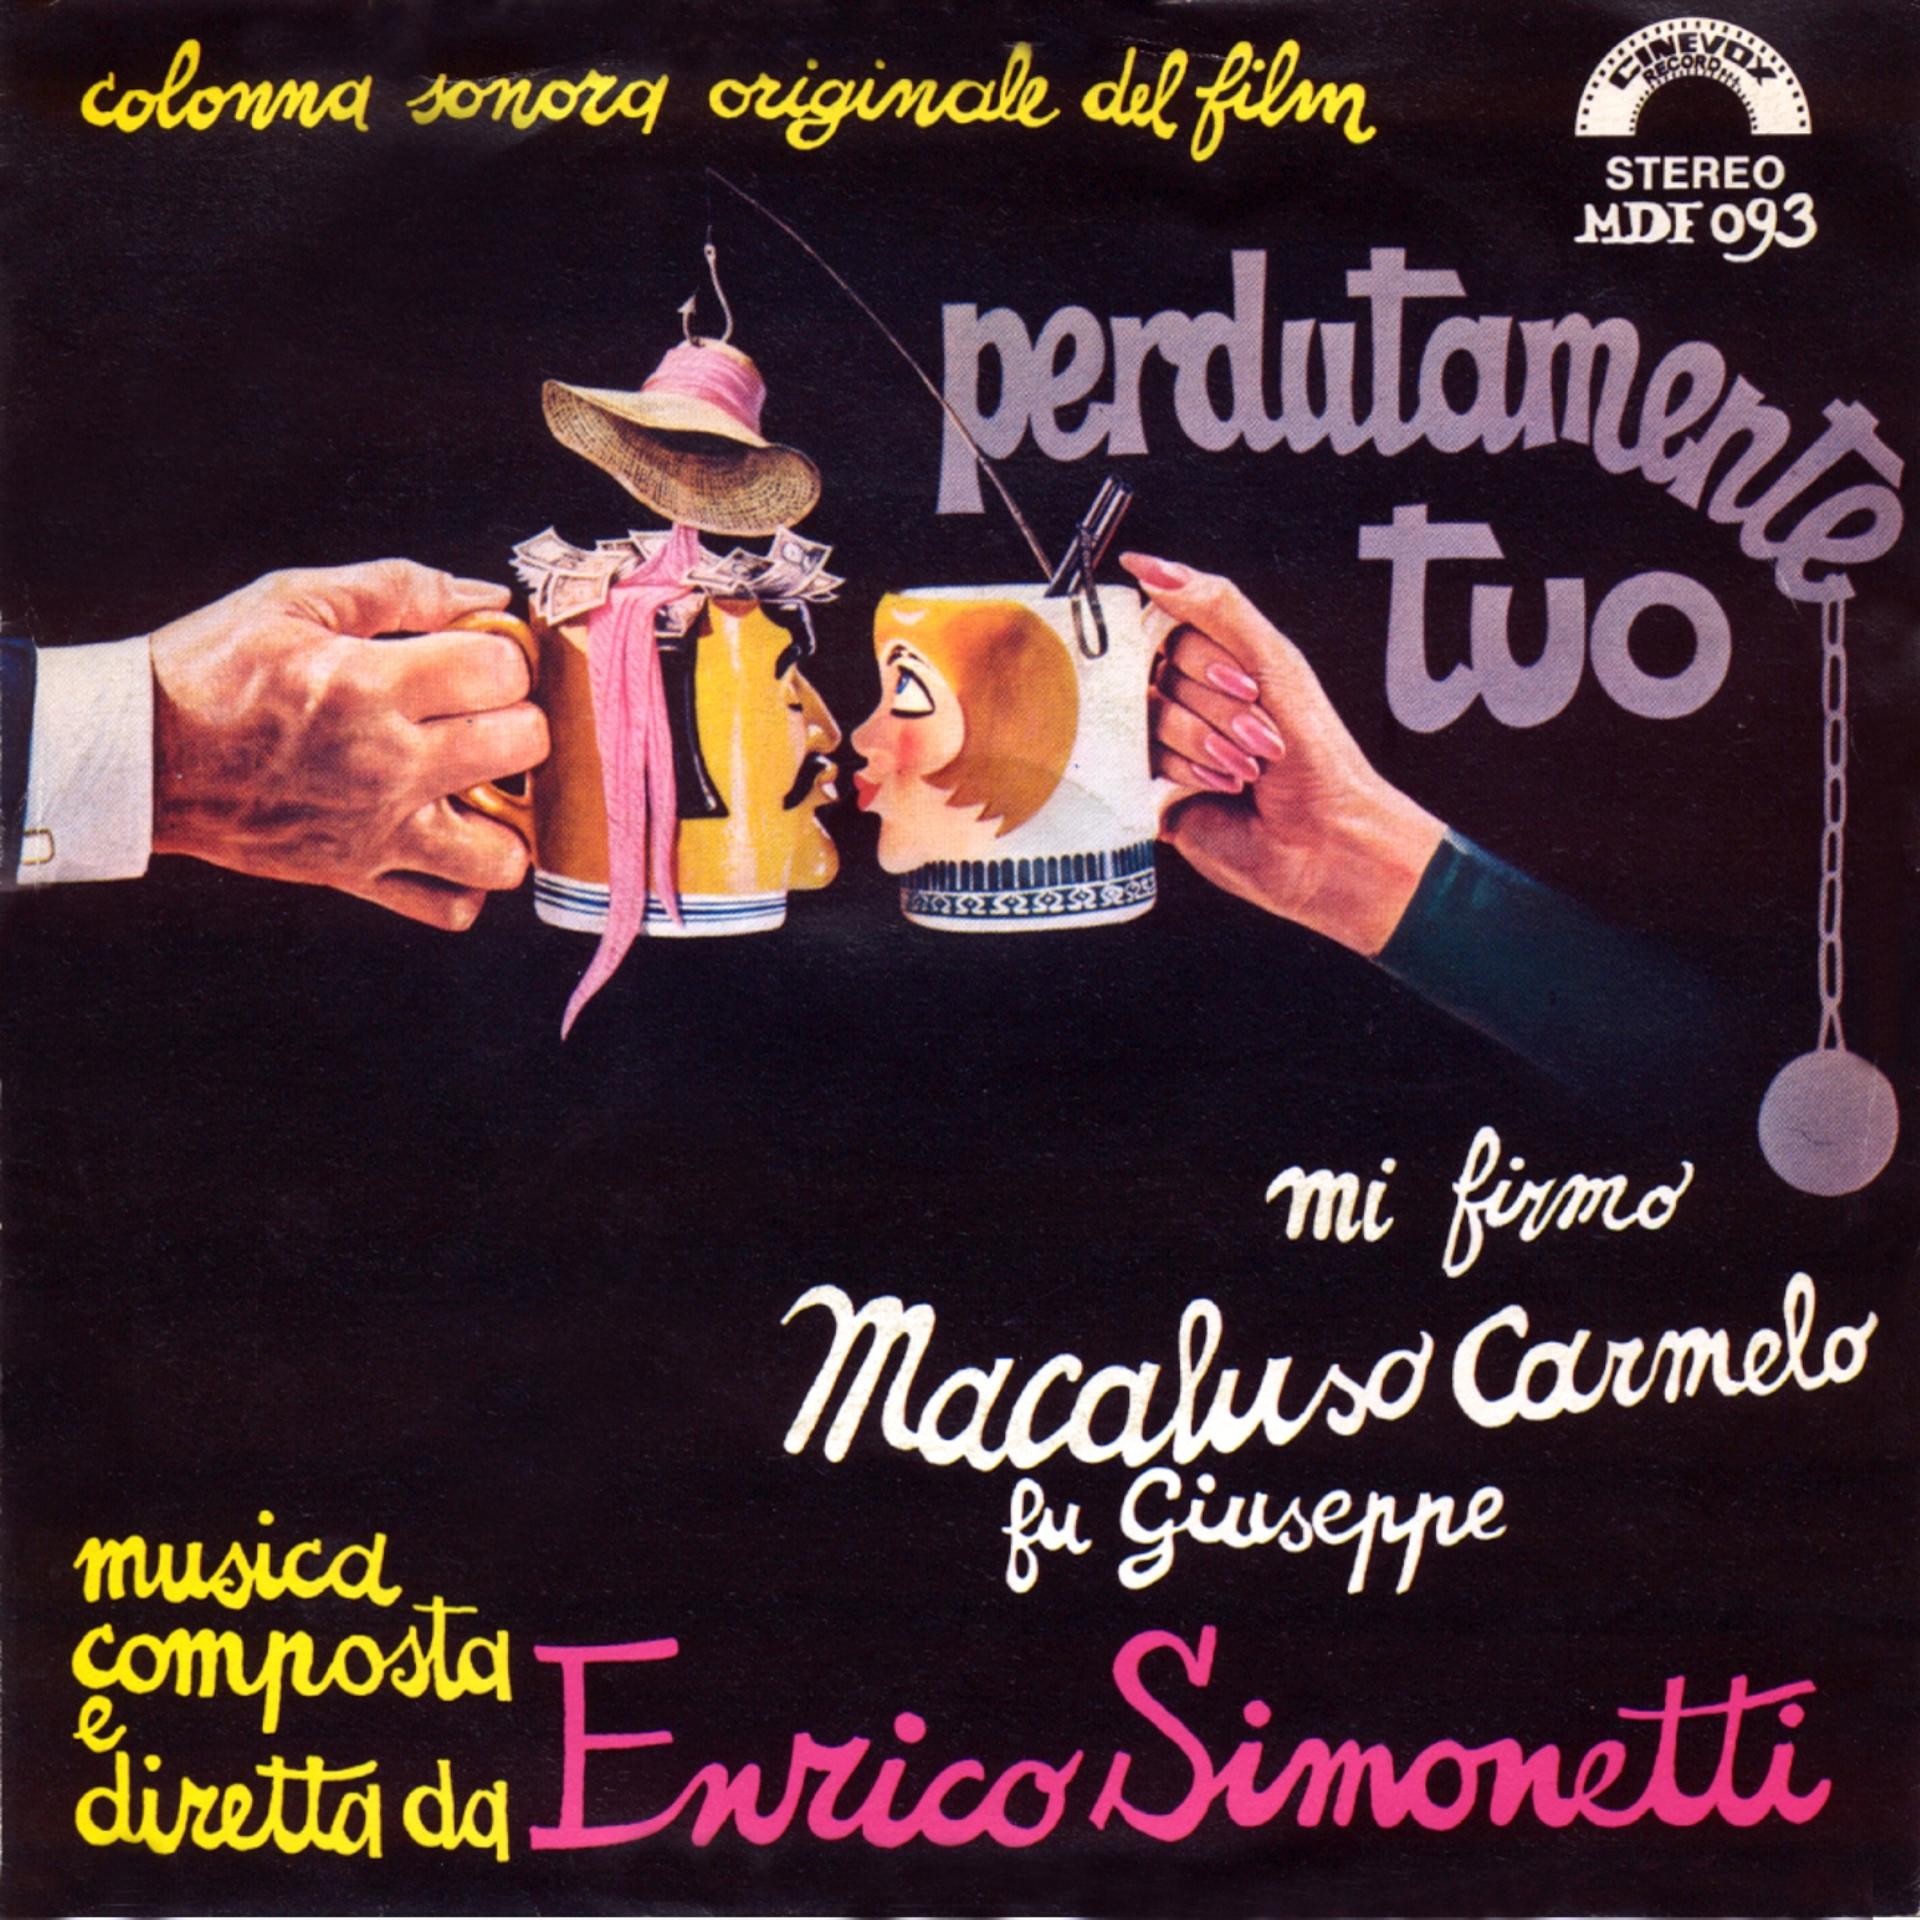 Постер альбома Perdutamente tuo mi firmo macaluso Carmelo fu Giuseppe